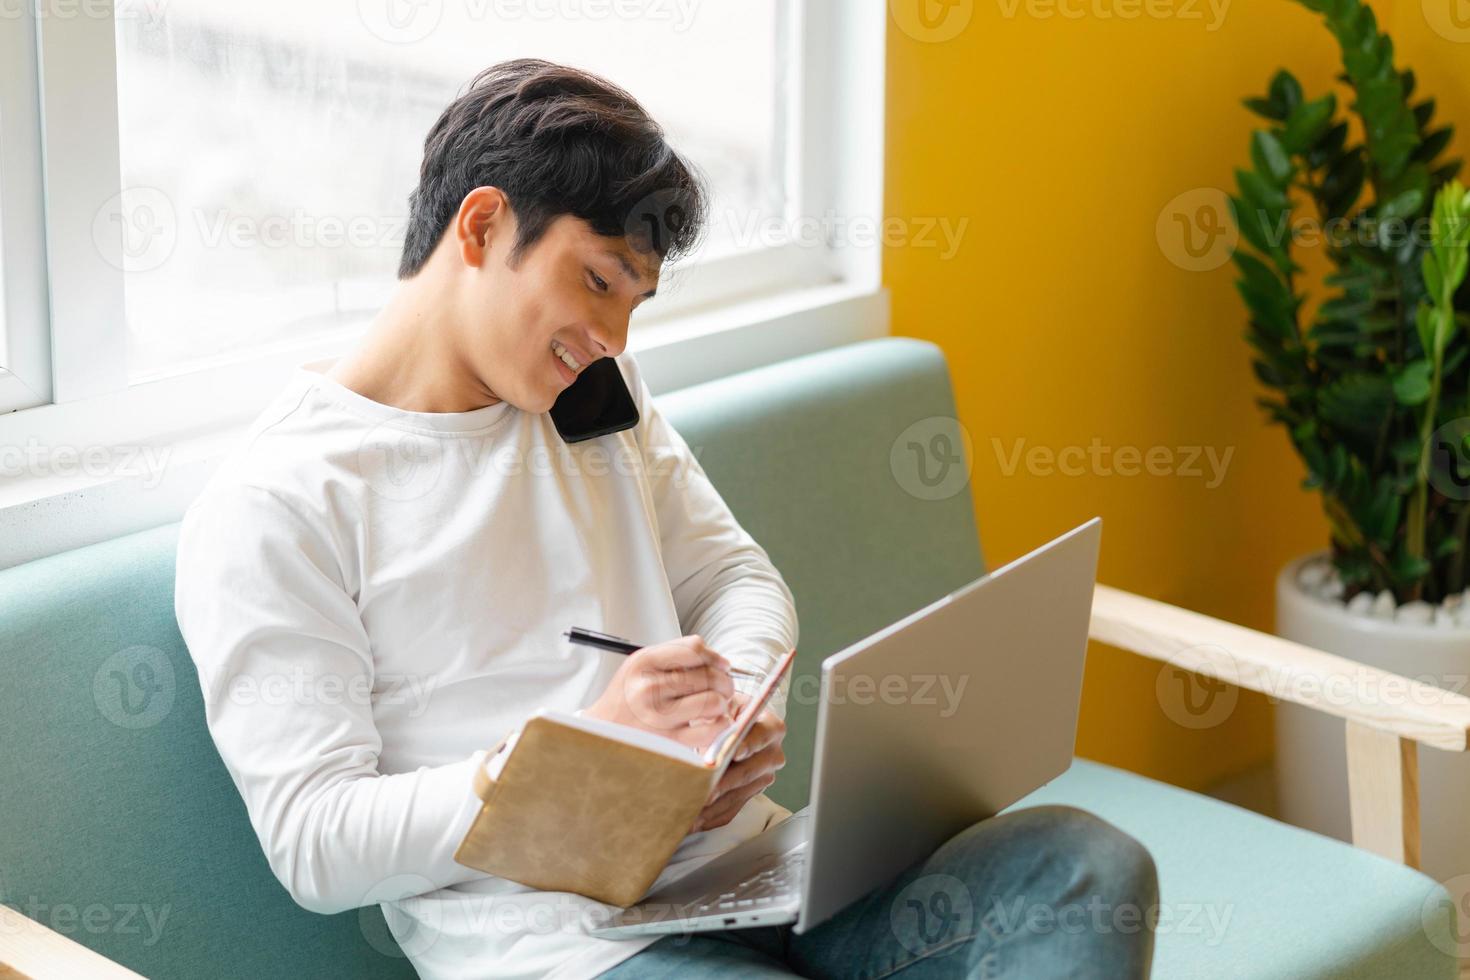 jovem asiático sentado trabalhando em casa foto